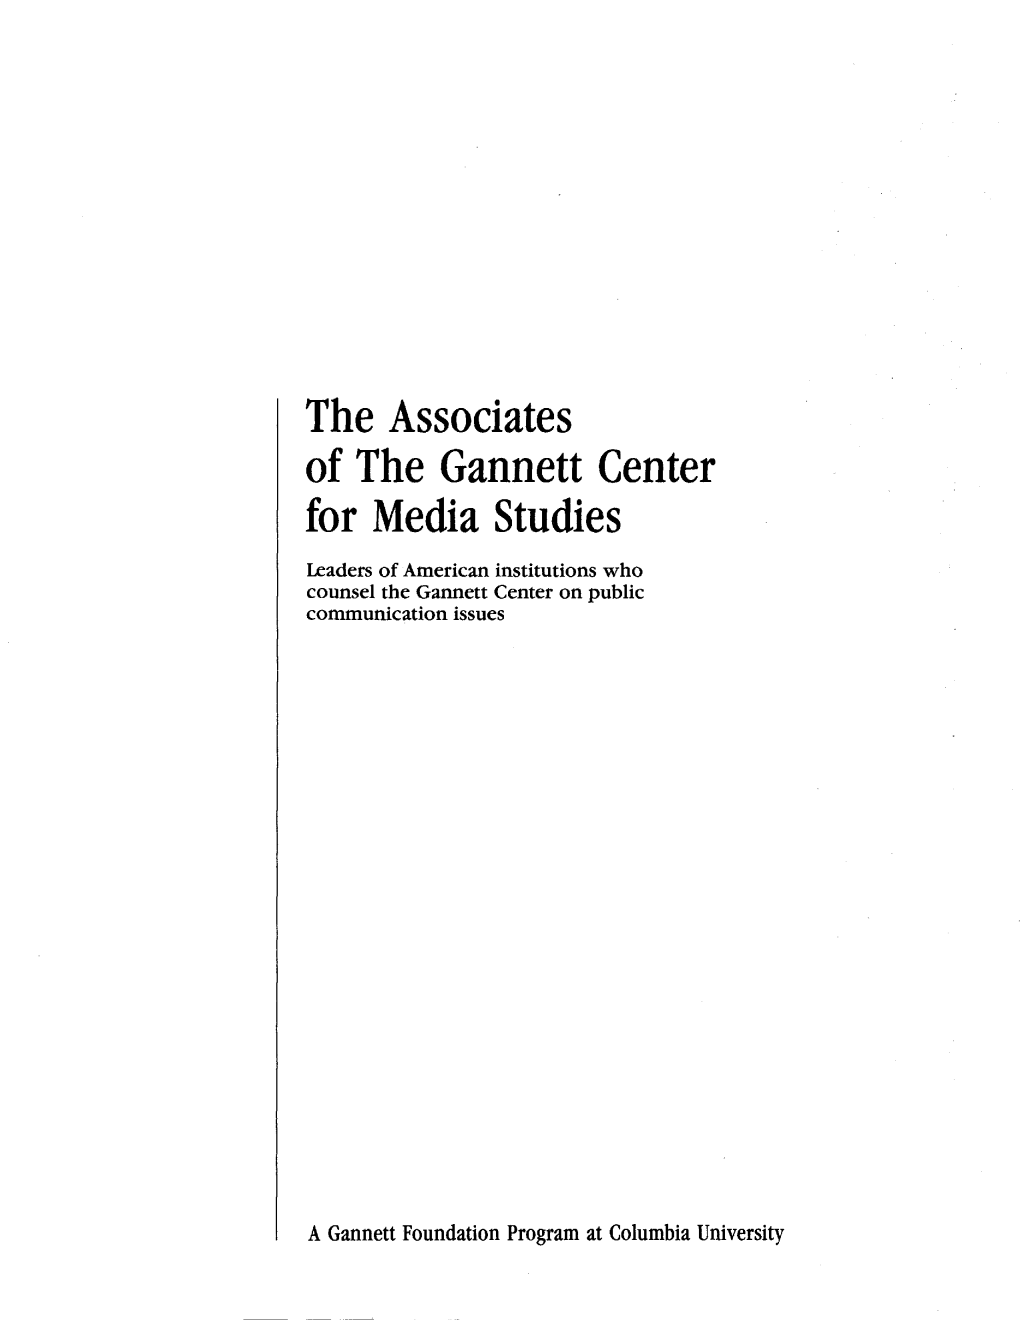 The Associates of the Gannett Center for Media Studies Leaders of American Institutions Who Counsel the Gannett Center on Public Communication Issues